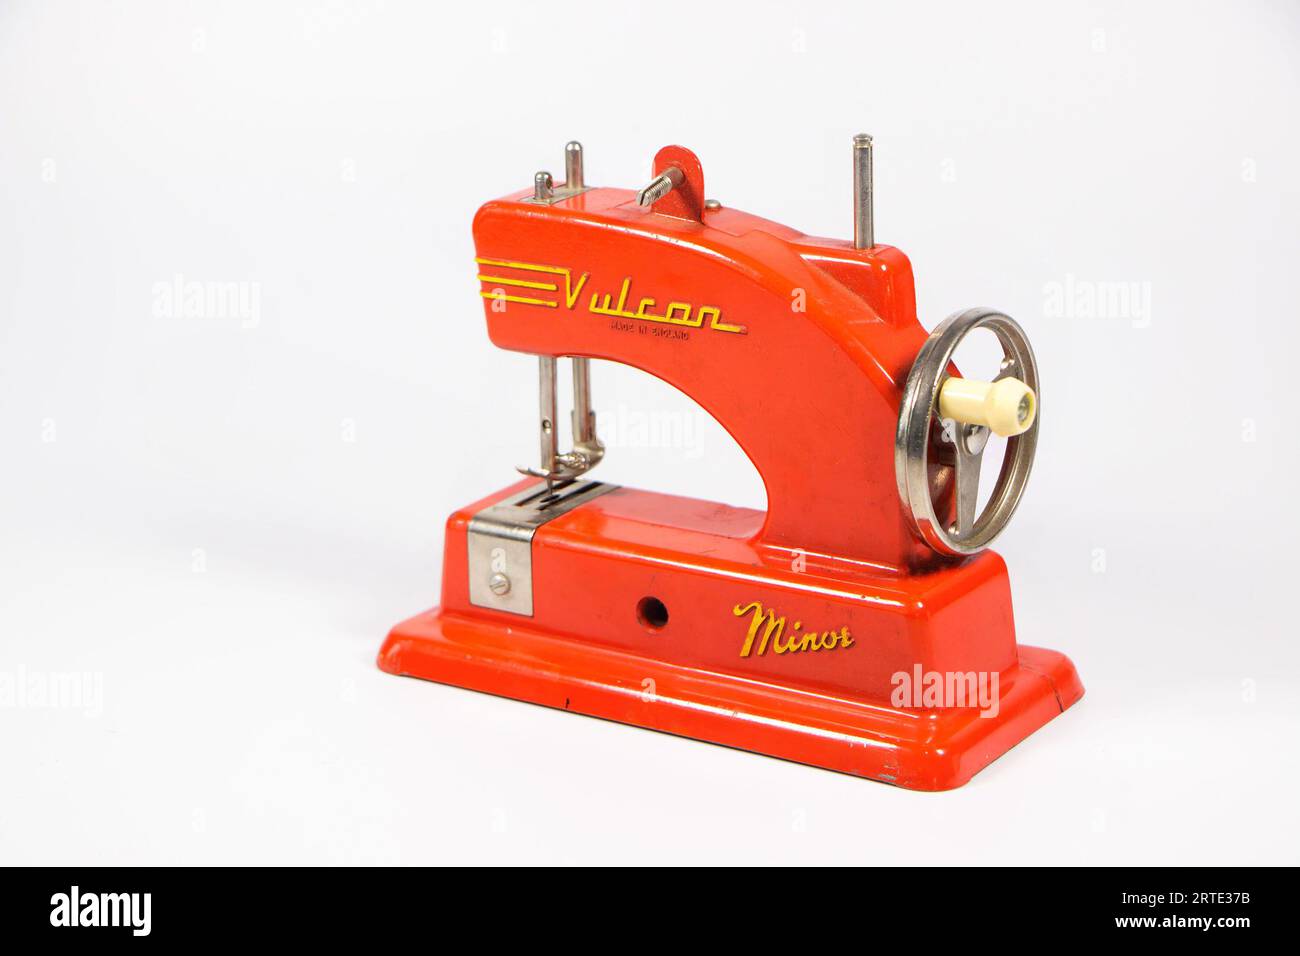 Machine à coudre Vulcan Minor vintage des années 1950 miniature jouet machine à coudre pour enfant isolé contre une boîte blanche de fond de studio Banque D'Images